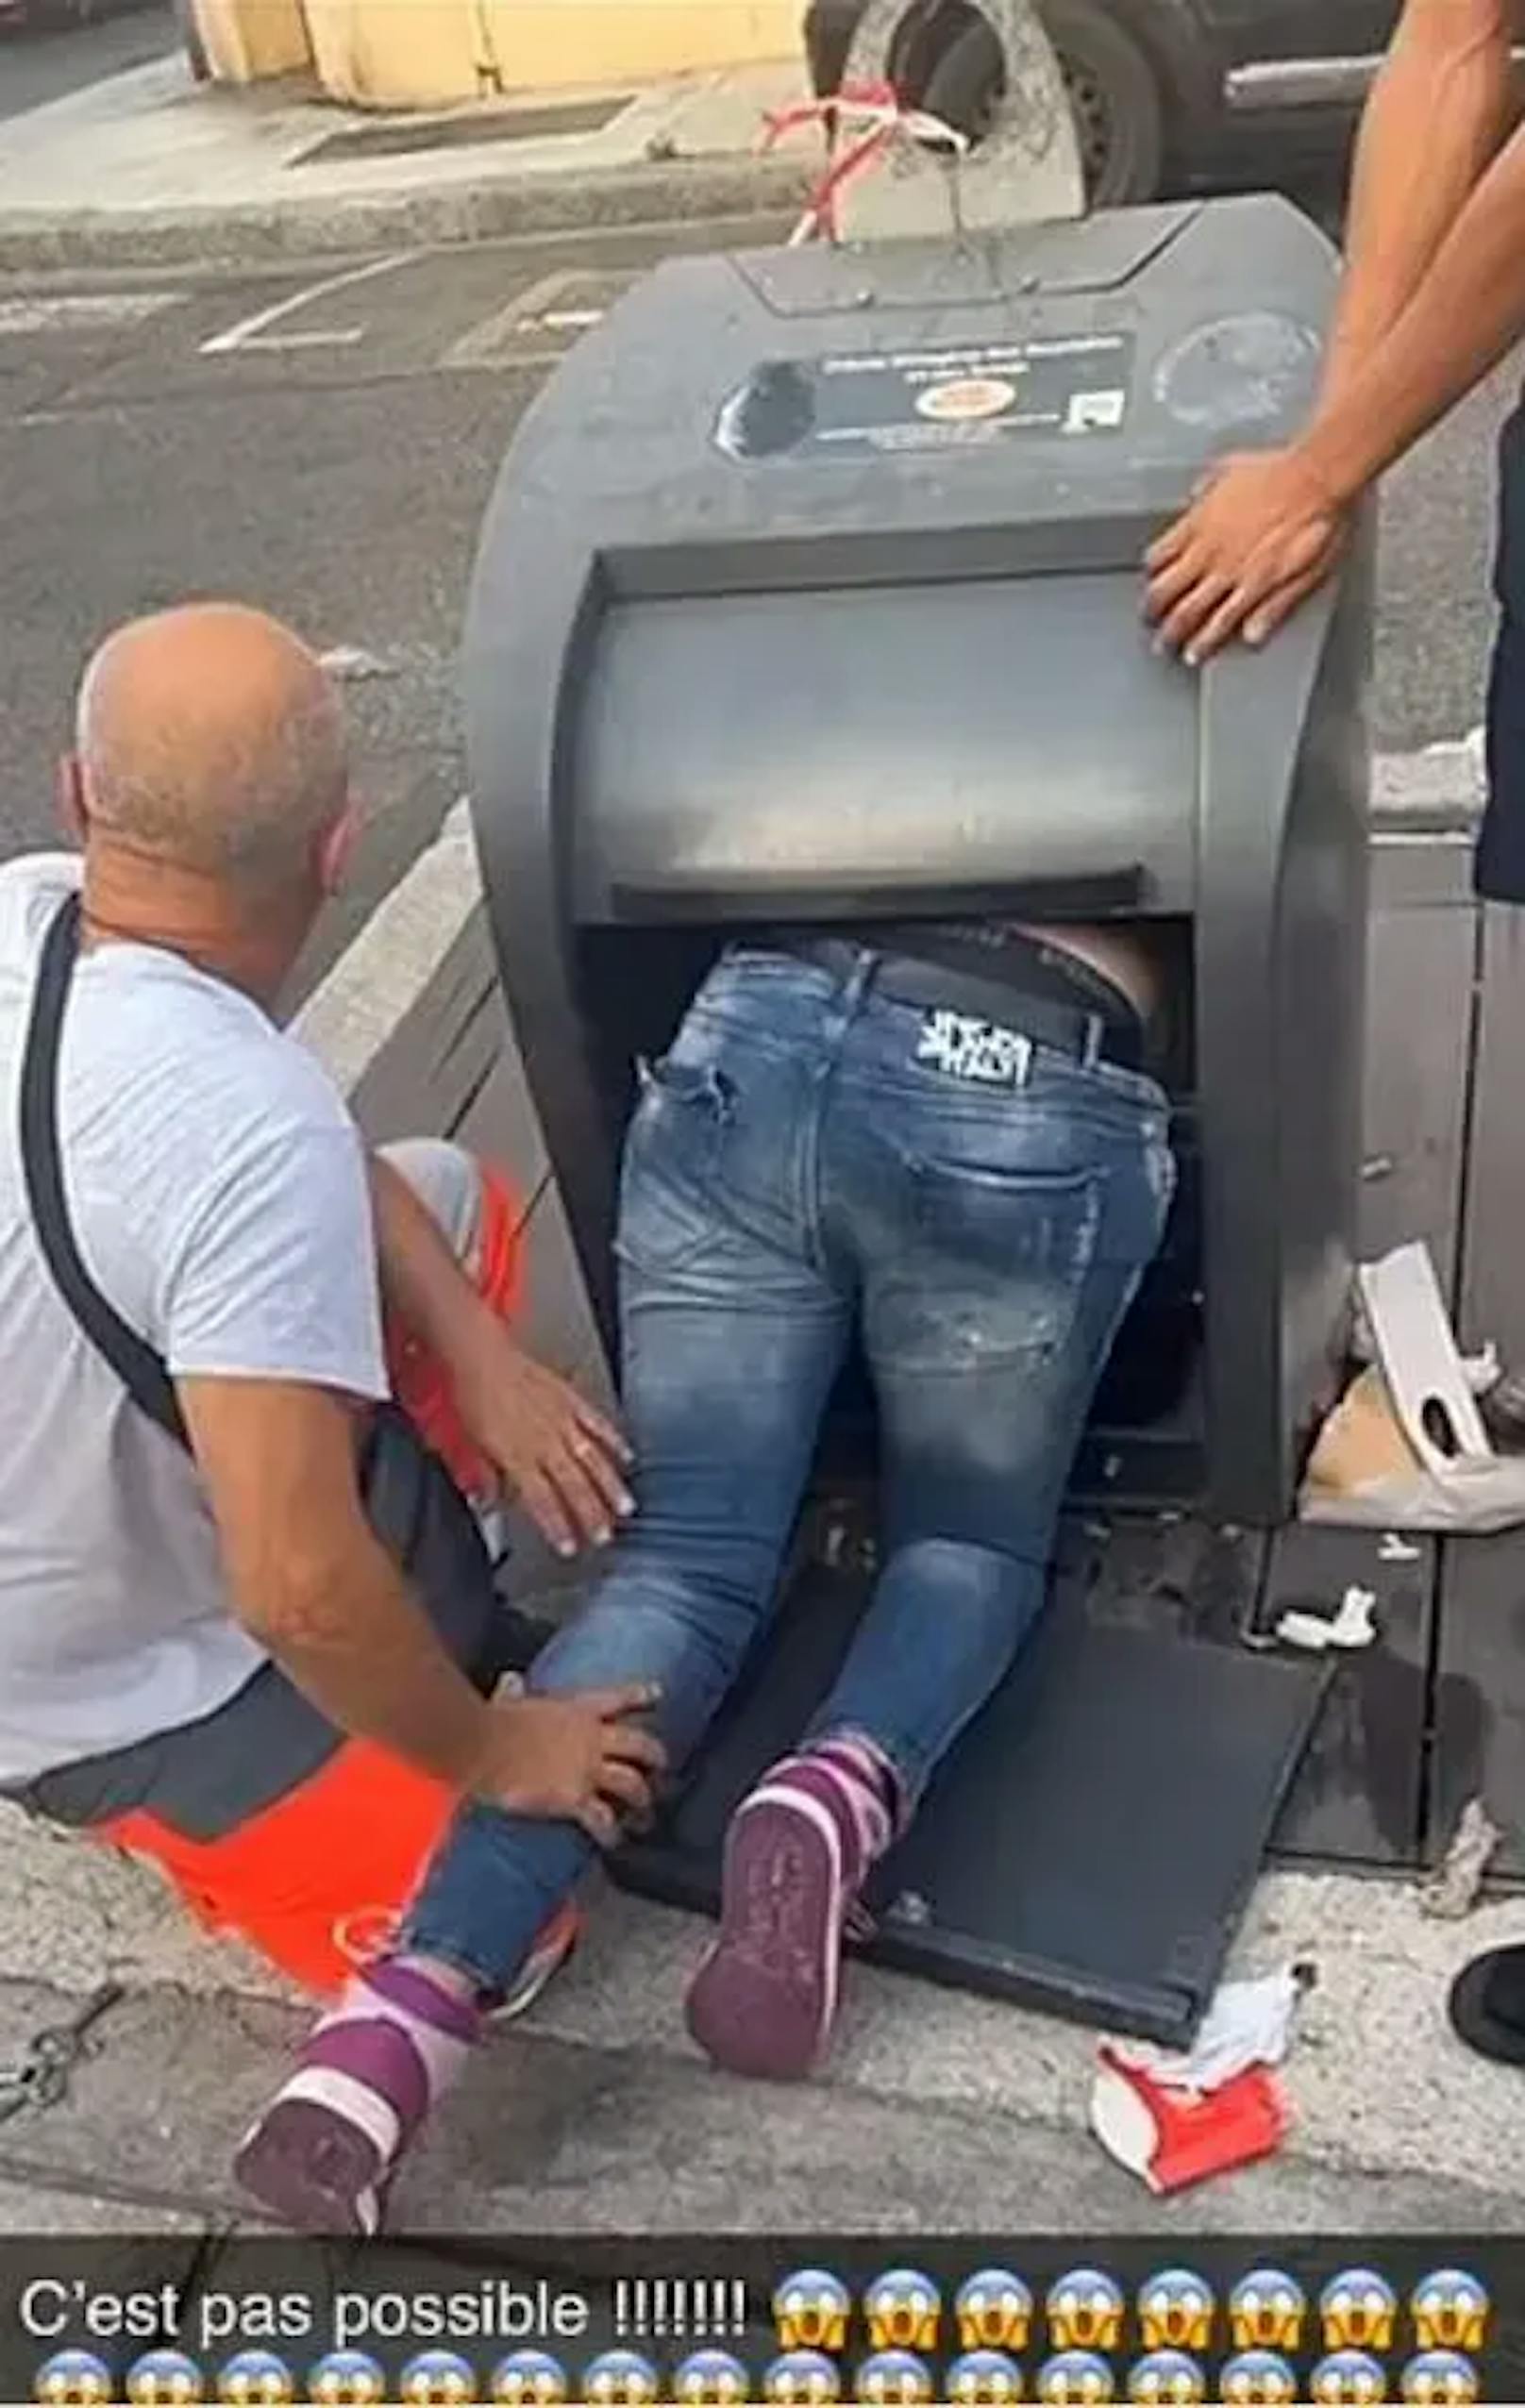 In Perpignan geriet ein Mann in eine absurde Situation: Er blieb in einem Abfallcontainer auf der Straße stecken.